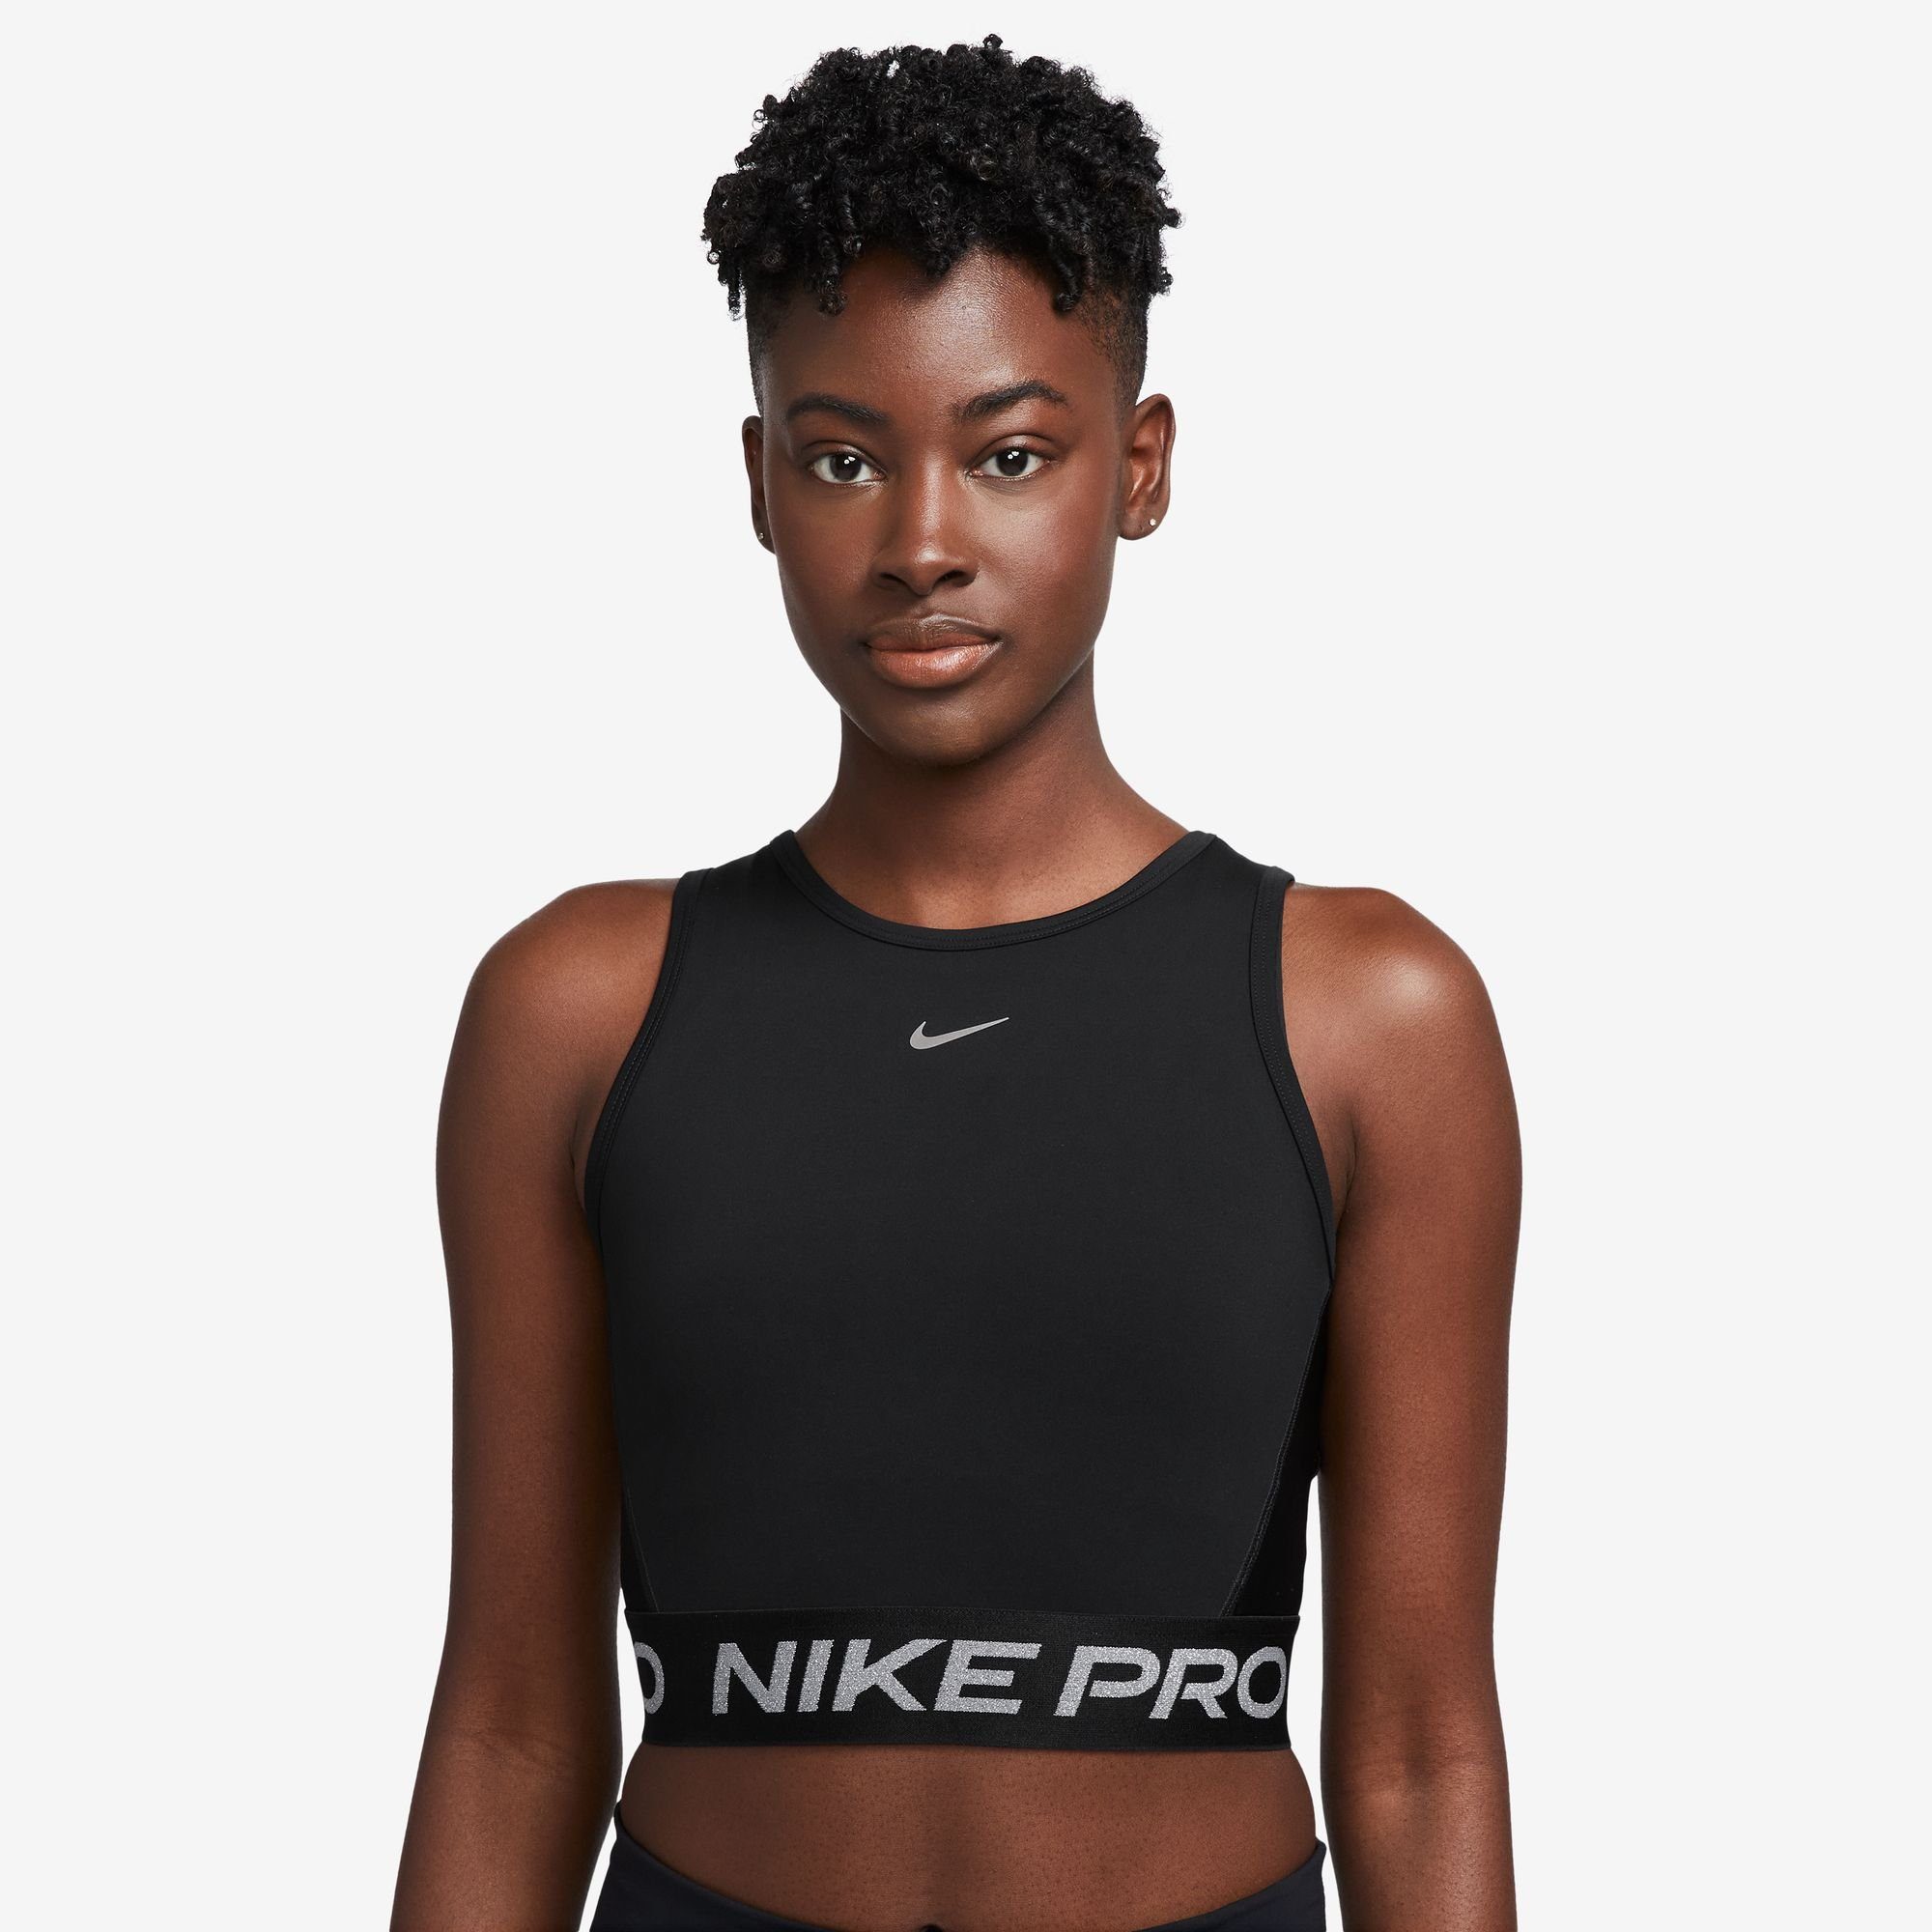 Nike Cropped Tops für Damen kaufen » Nike Croptops | OTTO